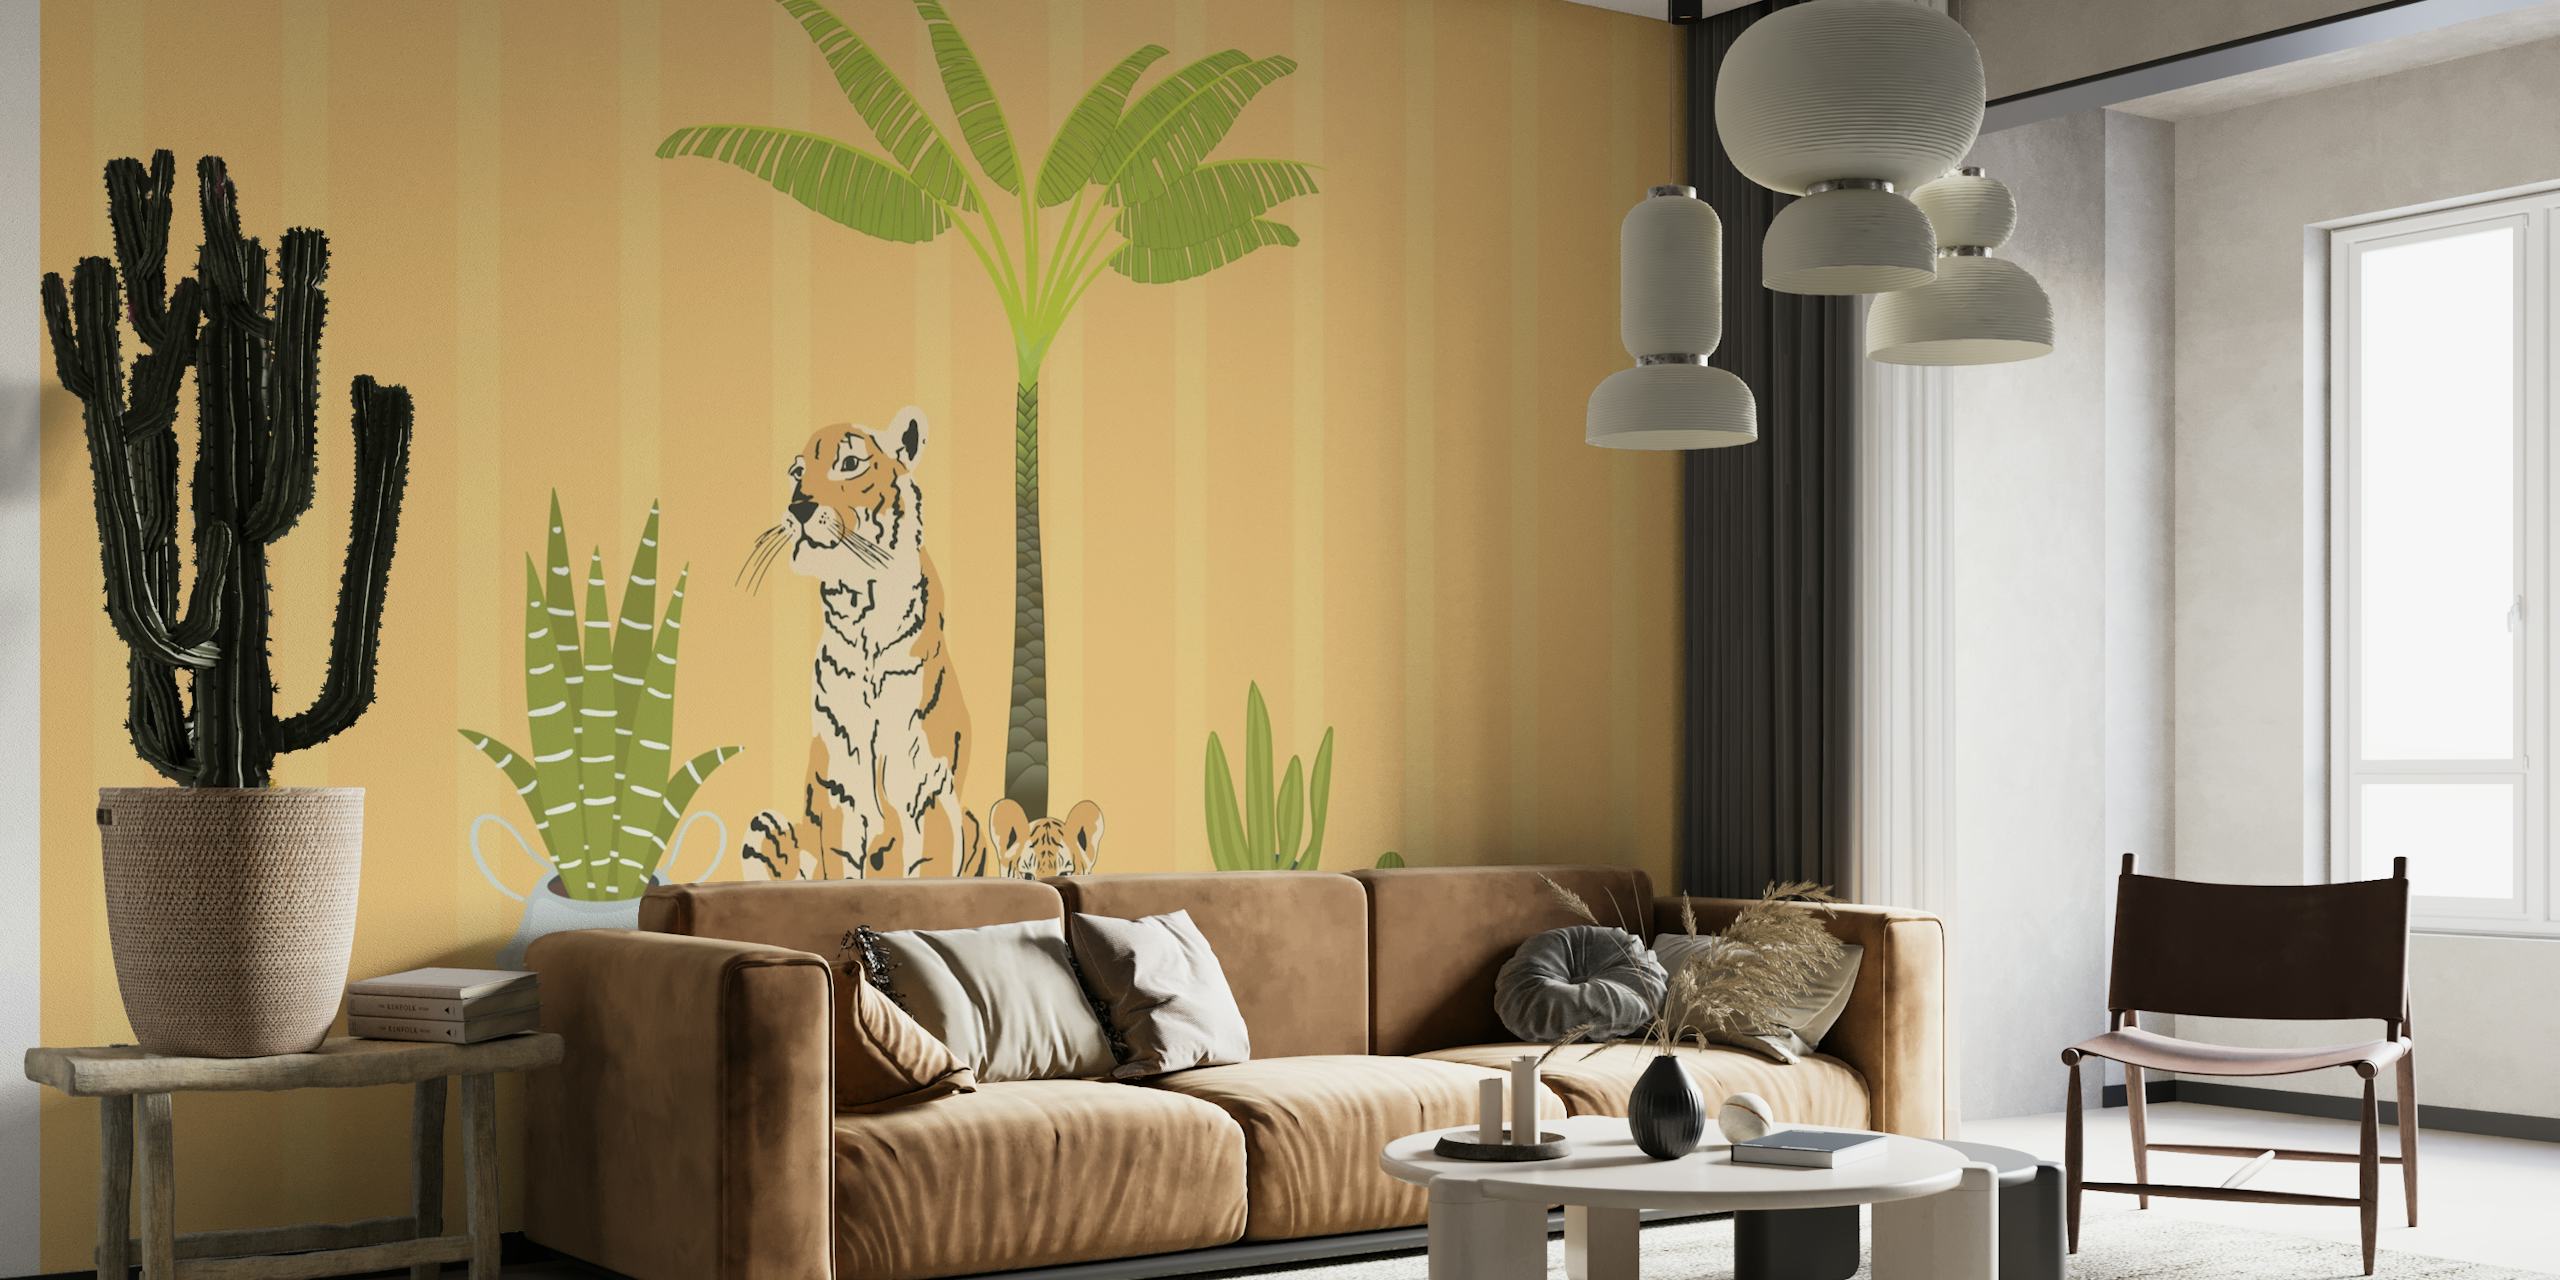 My Urban Jungle Tigers wallpaper